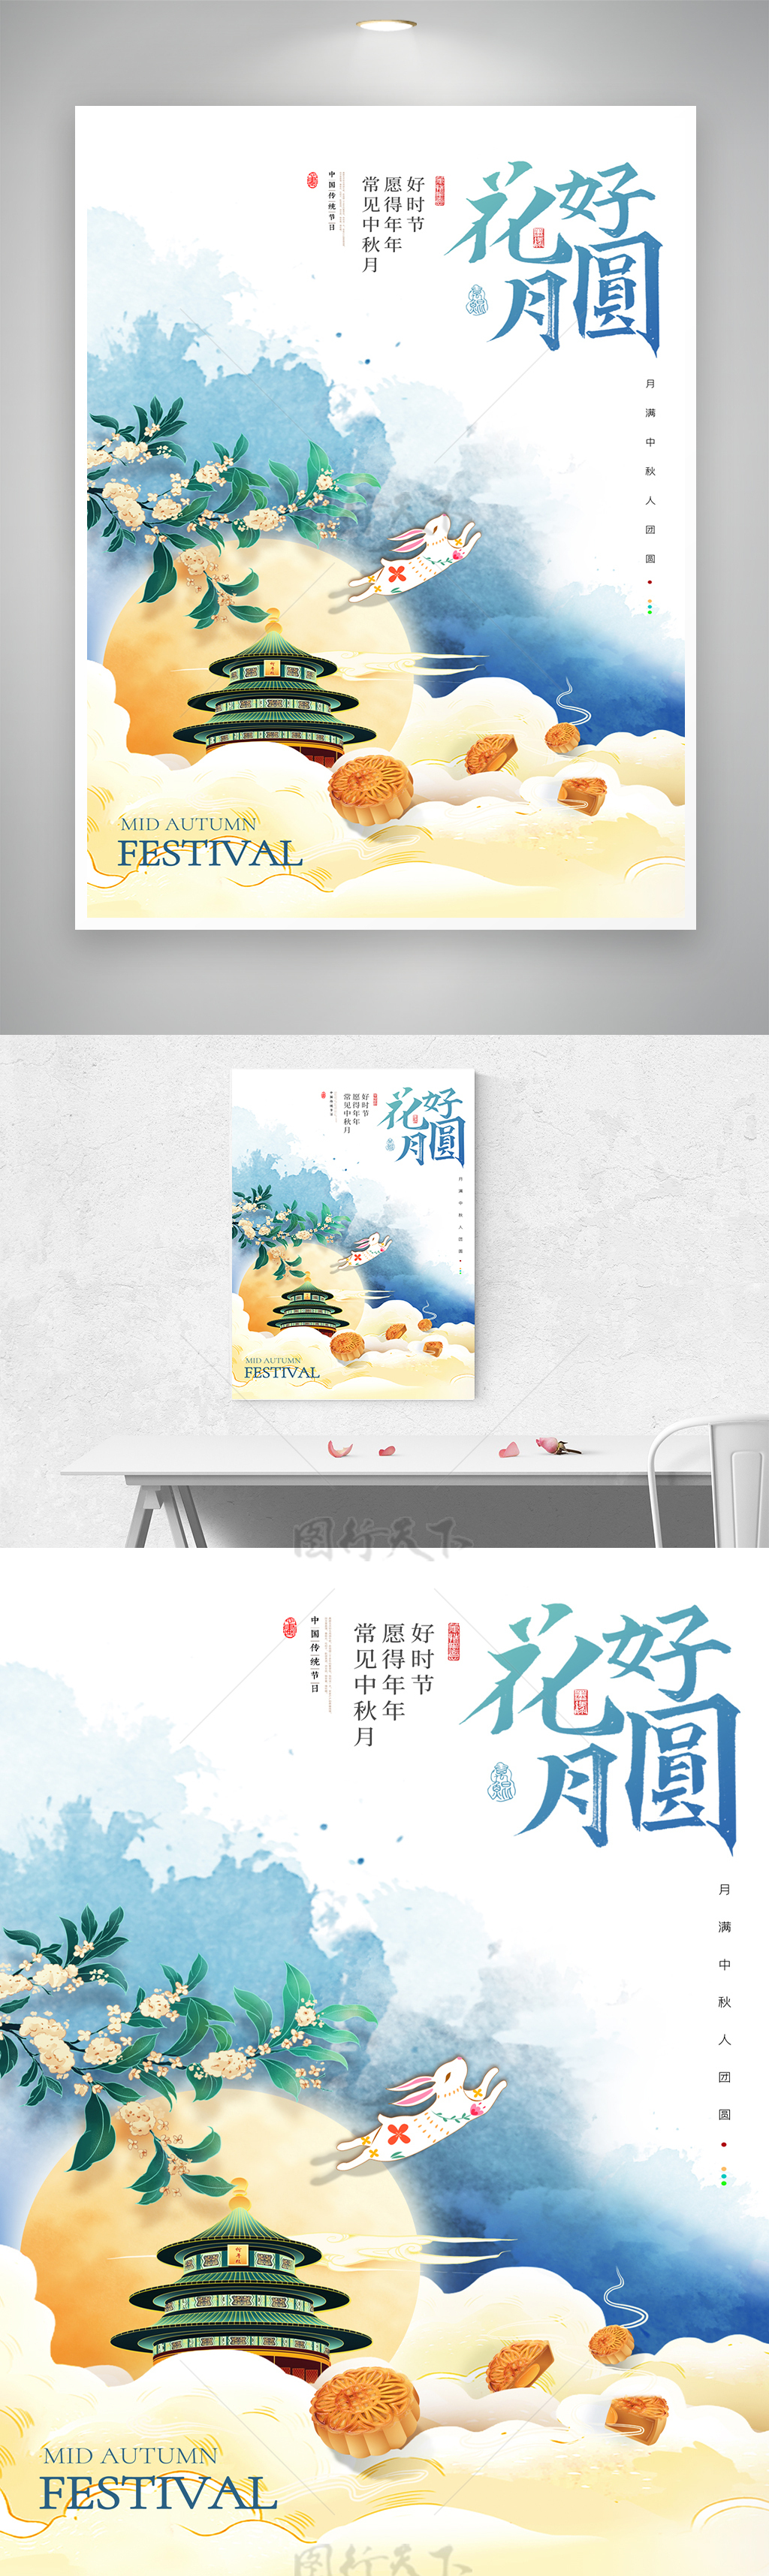 传统中秋节宣传海报素材